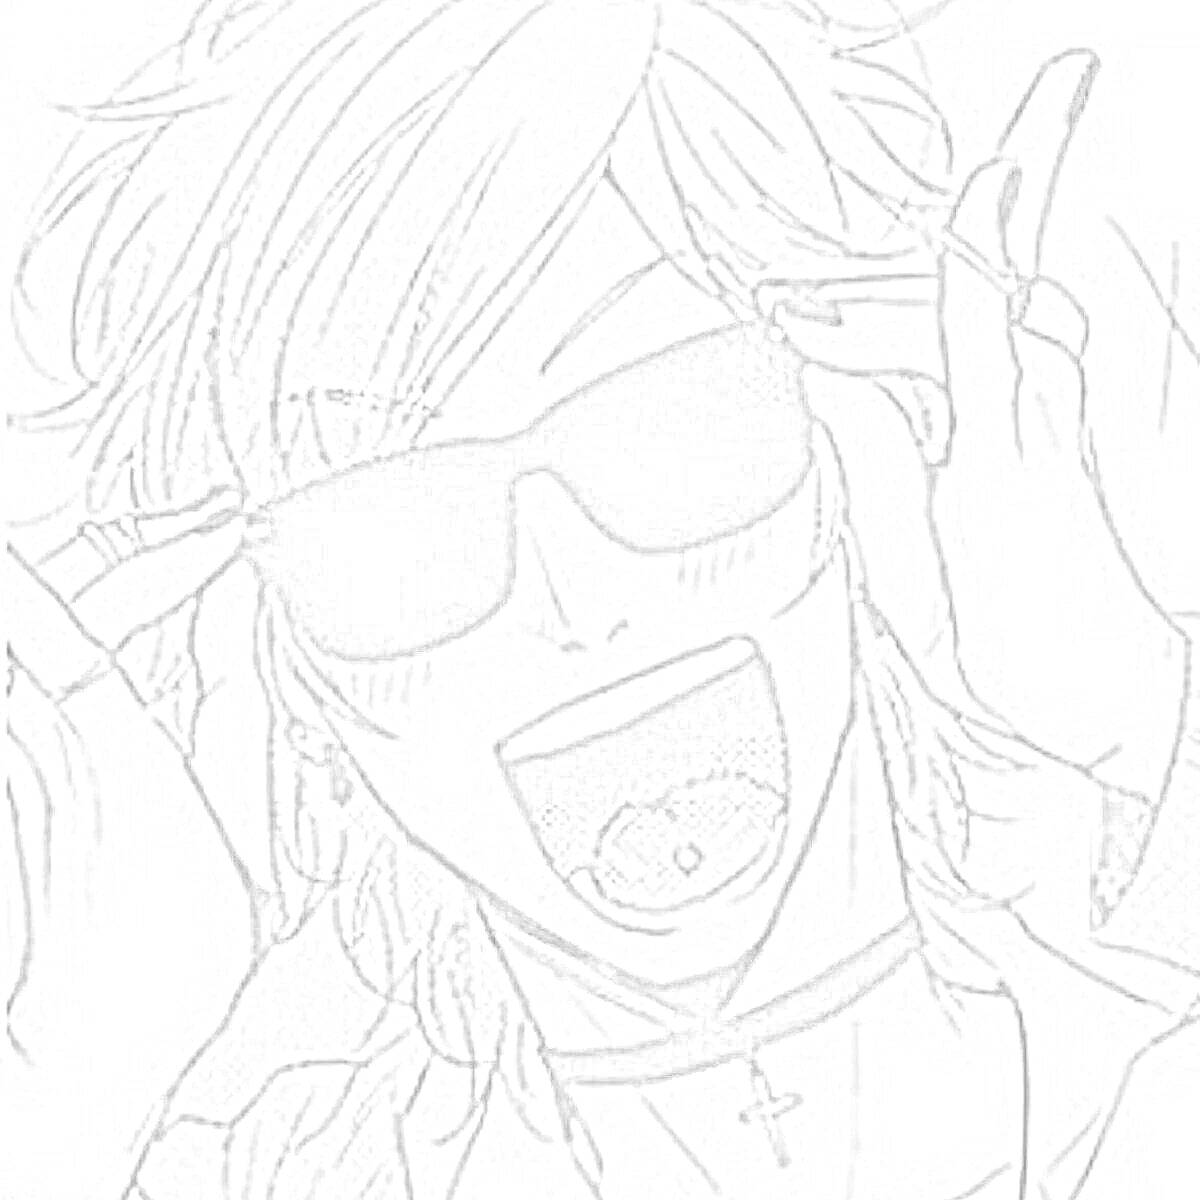 Раскраска Персонаж в солнцезащитных очках с пирсингом в языке и ожерельем-крестом на шее